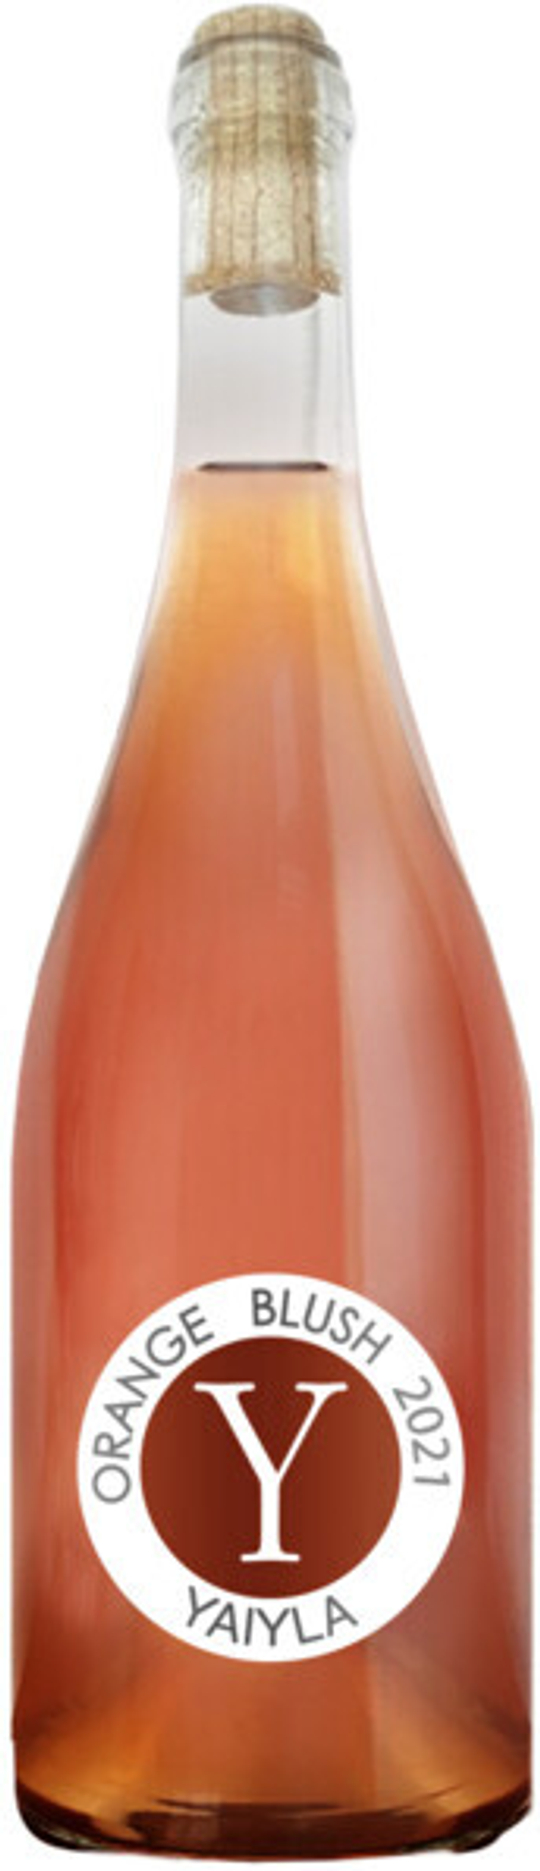 Вино Yaiyla Rkatsiteli Orange Blush, 0,75 л.